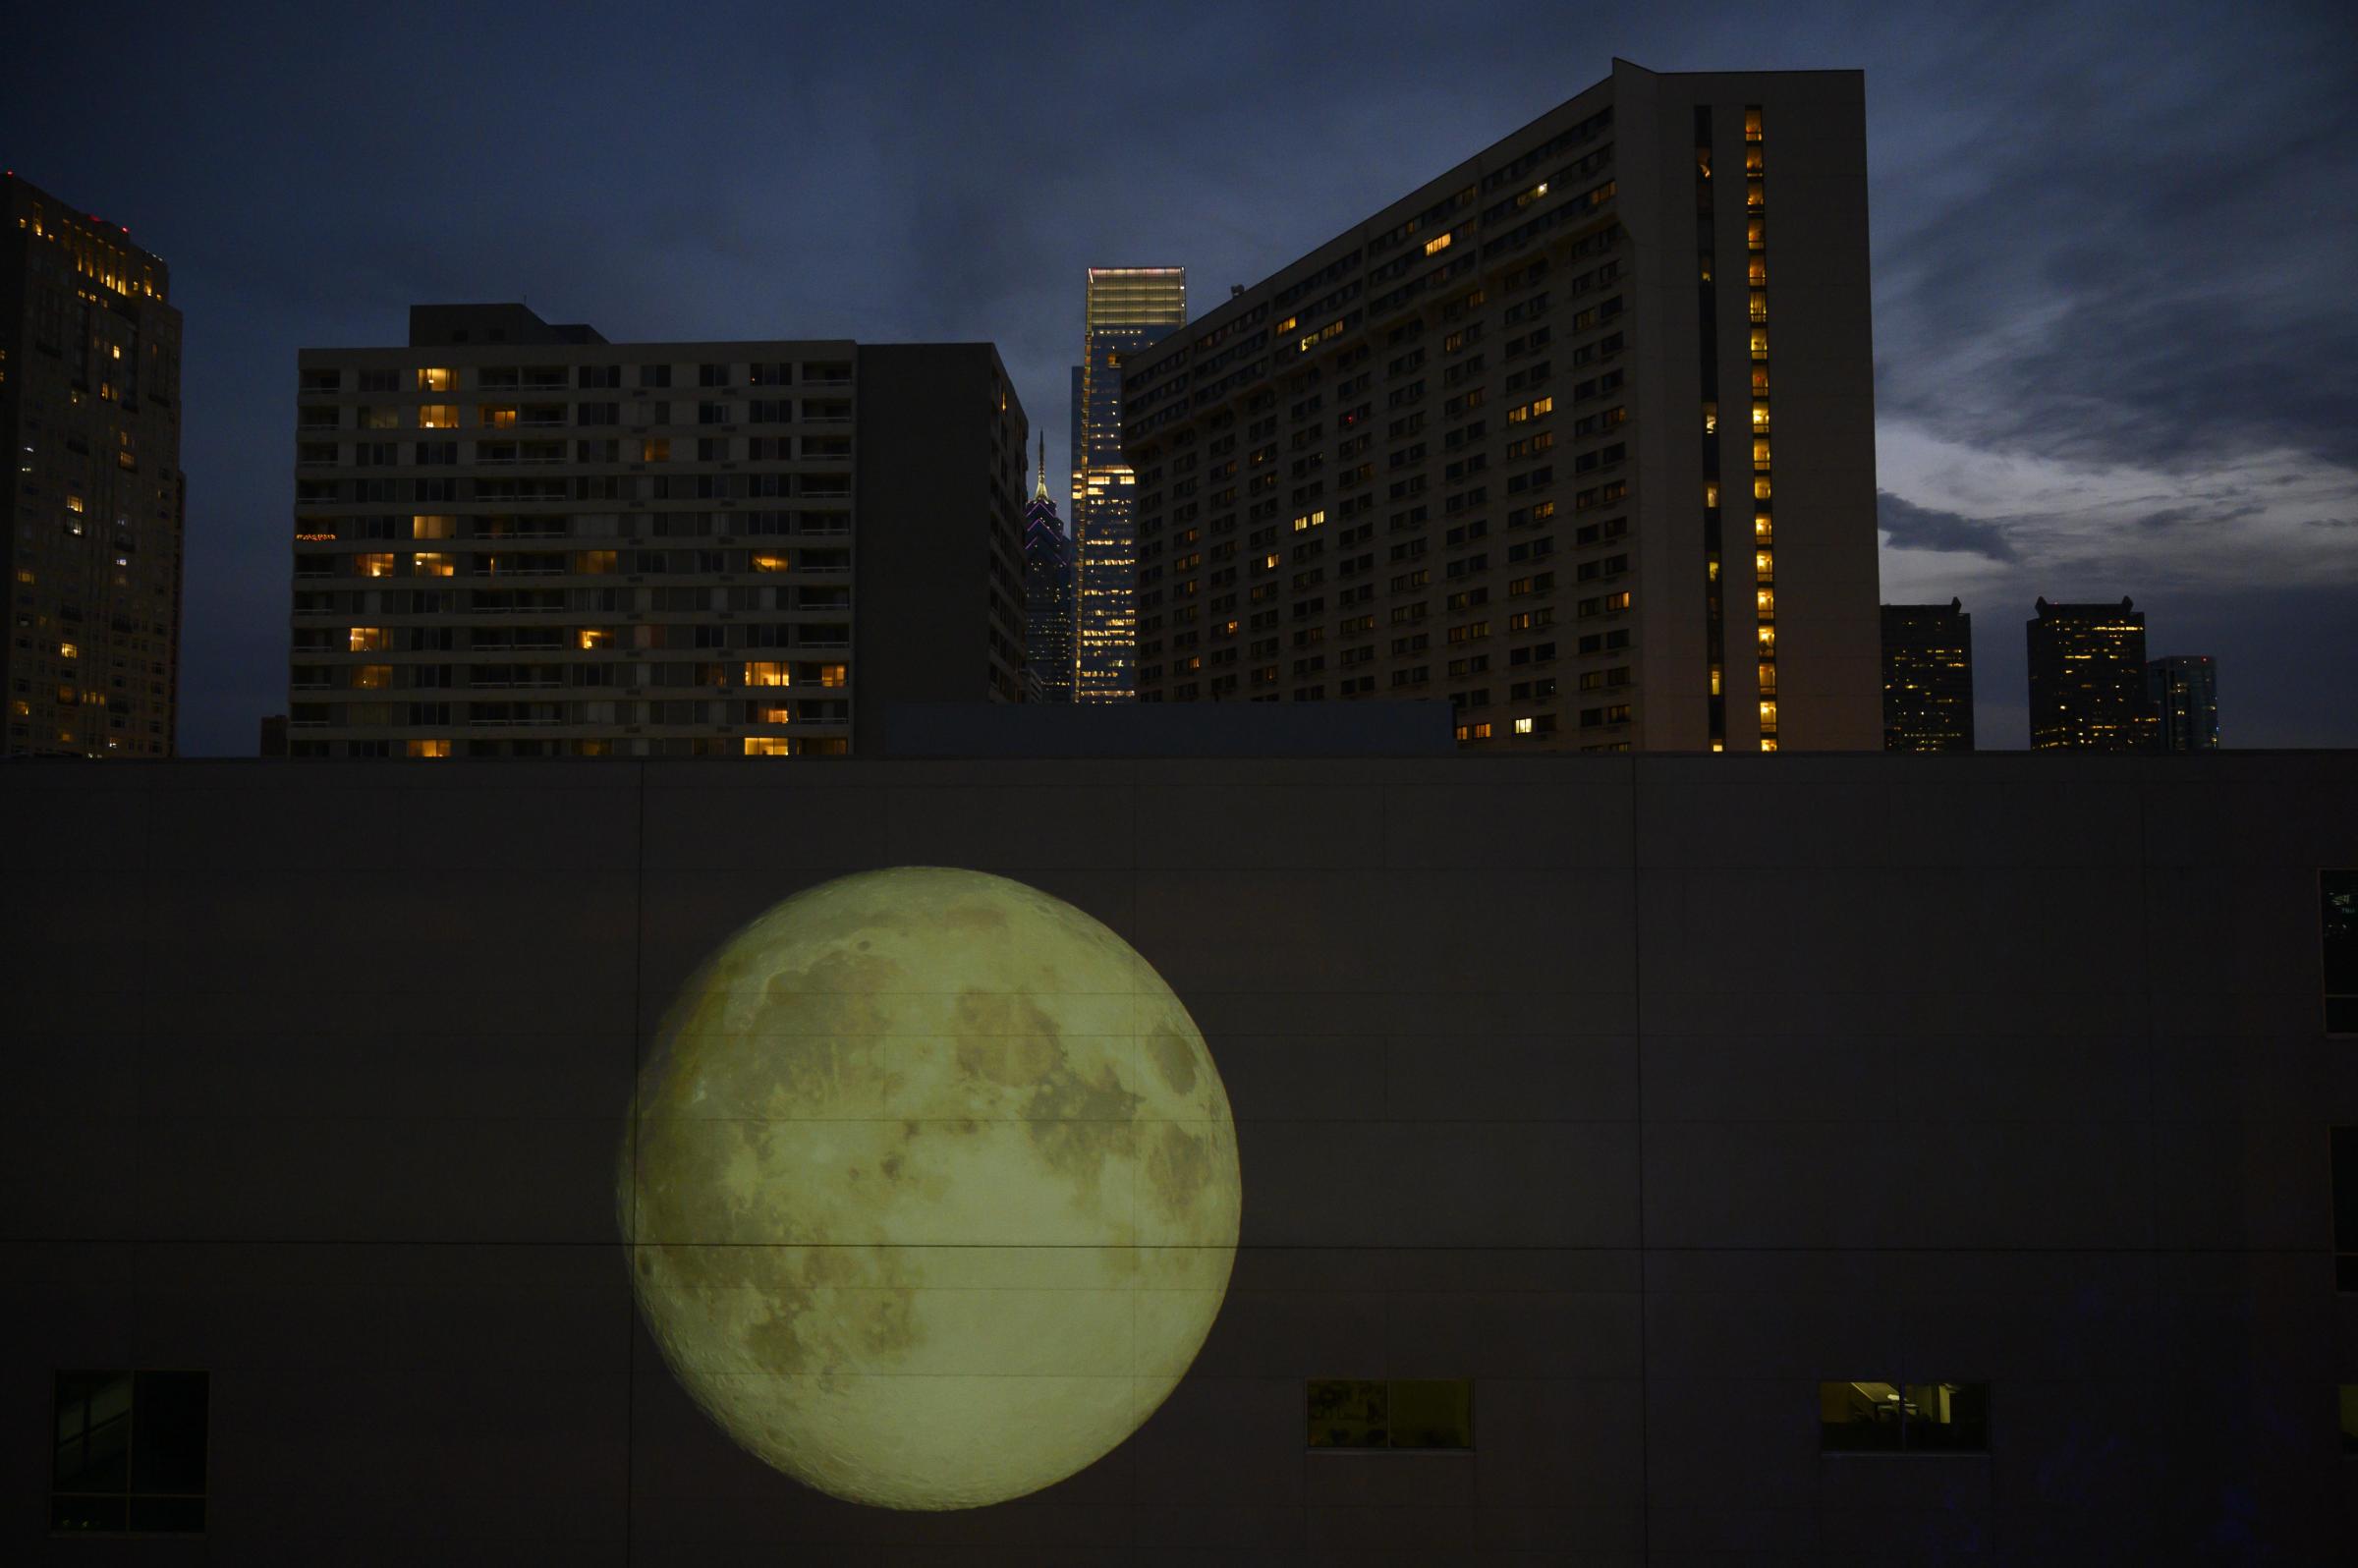 Arts documentation - Moon Viewing Platform by Nadia Hironaka, Matthew Suib and...